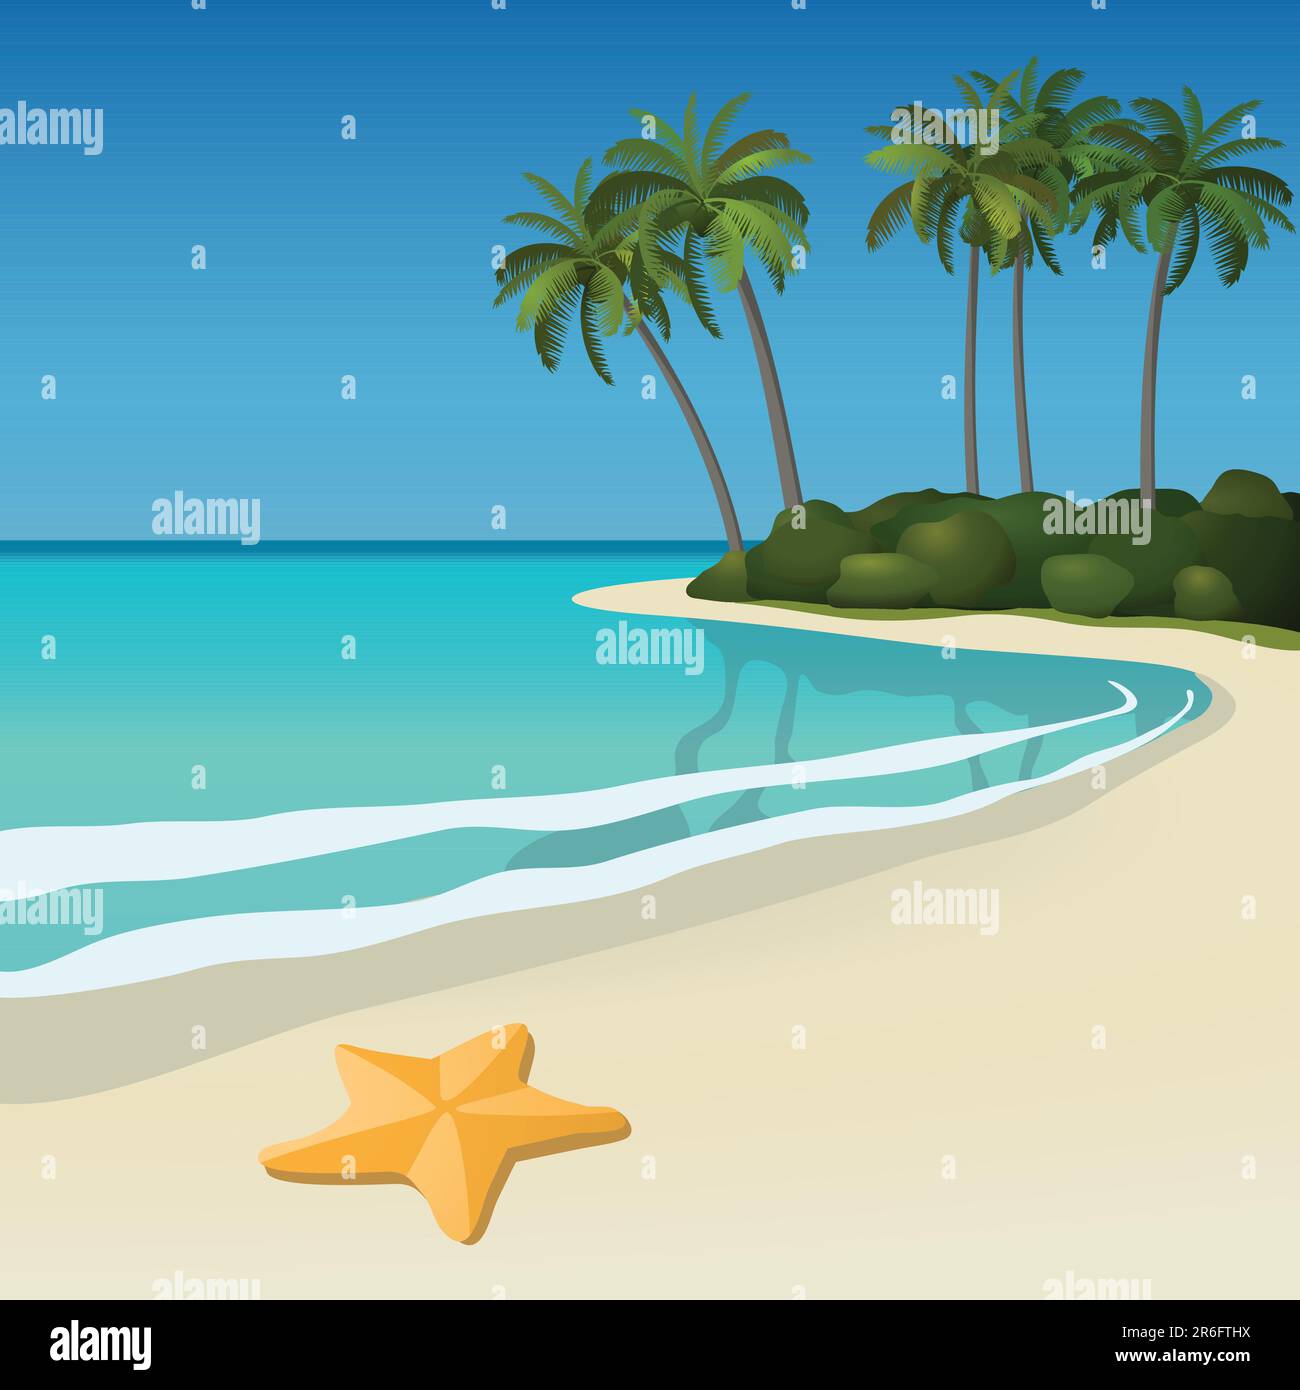 Illustrazione di una spiaggia tropicale di sabbia bianca con palme e stelle marine. Tutti gli oggetti sono raggruppati e facili da modificare o separare. Illustrazione Vettoriale